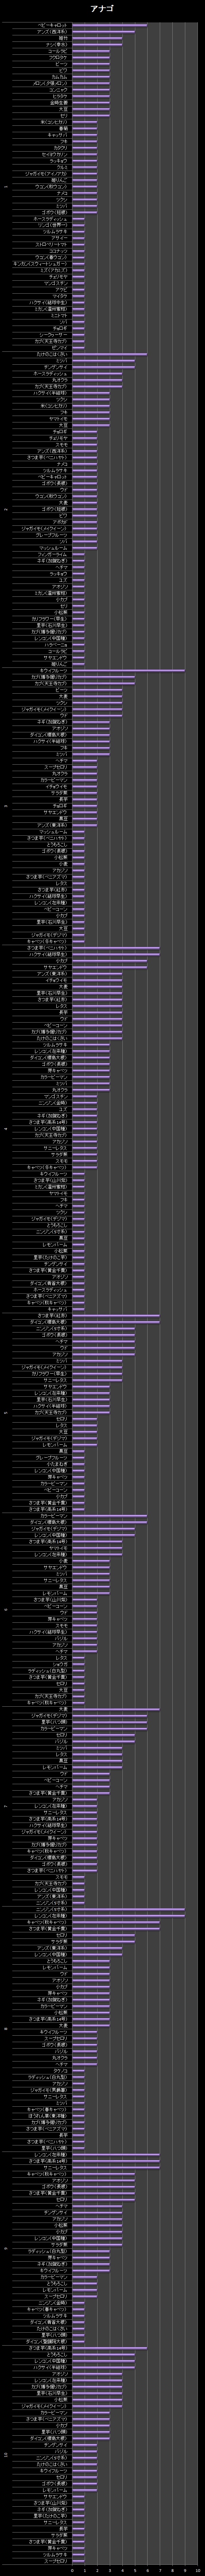 横棒グラフ/アナゴ【２回目】